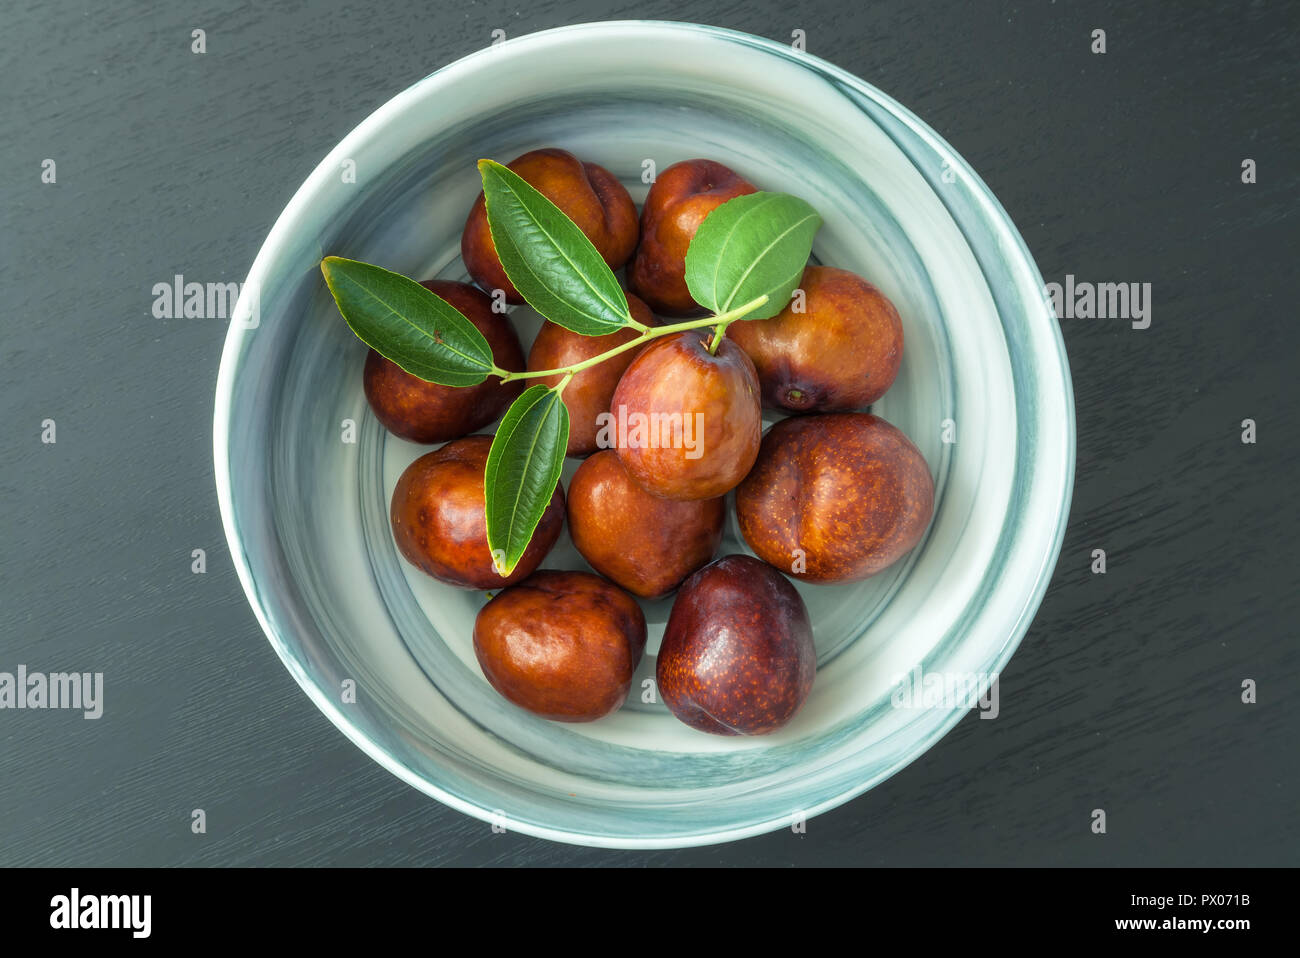 Bowl of fresh jujube fruit (Ziziphus jujuba) Stock Photo